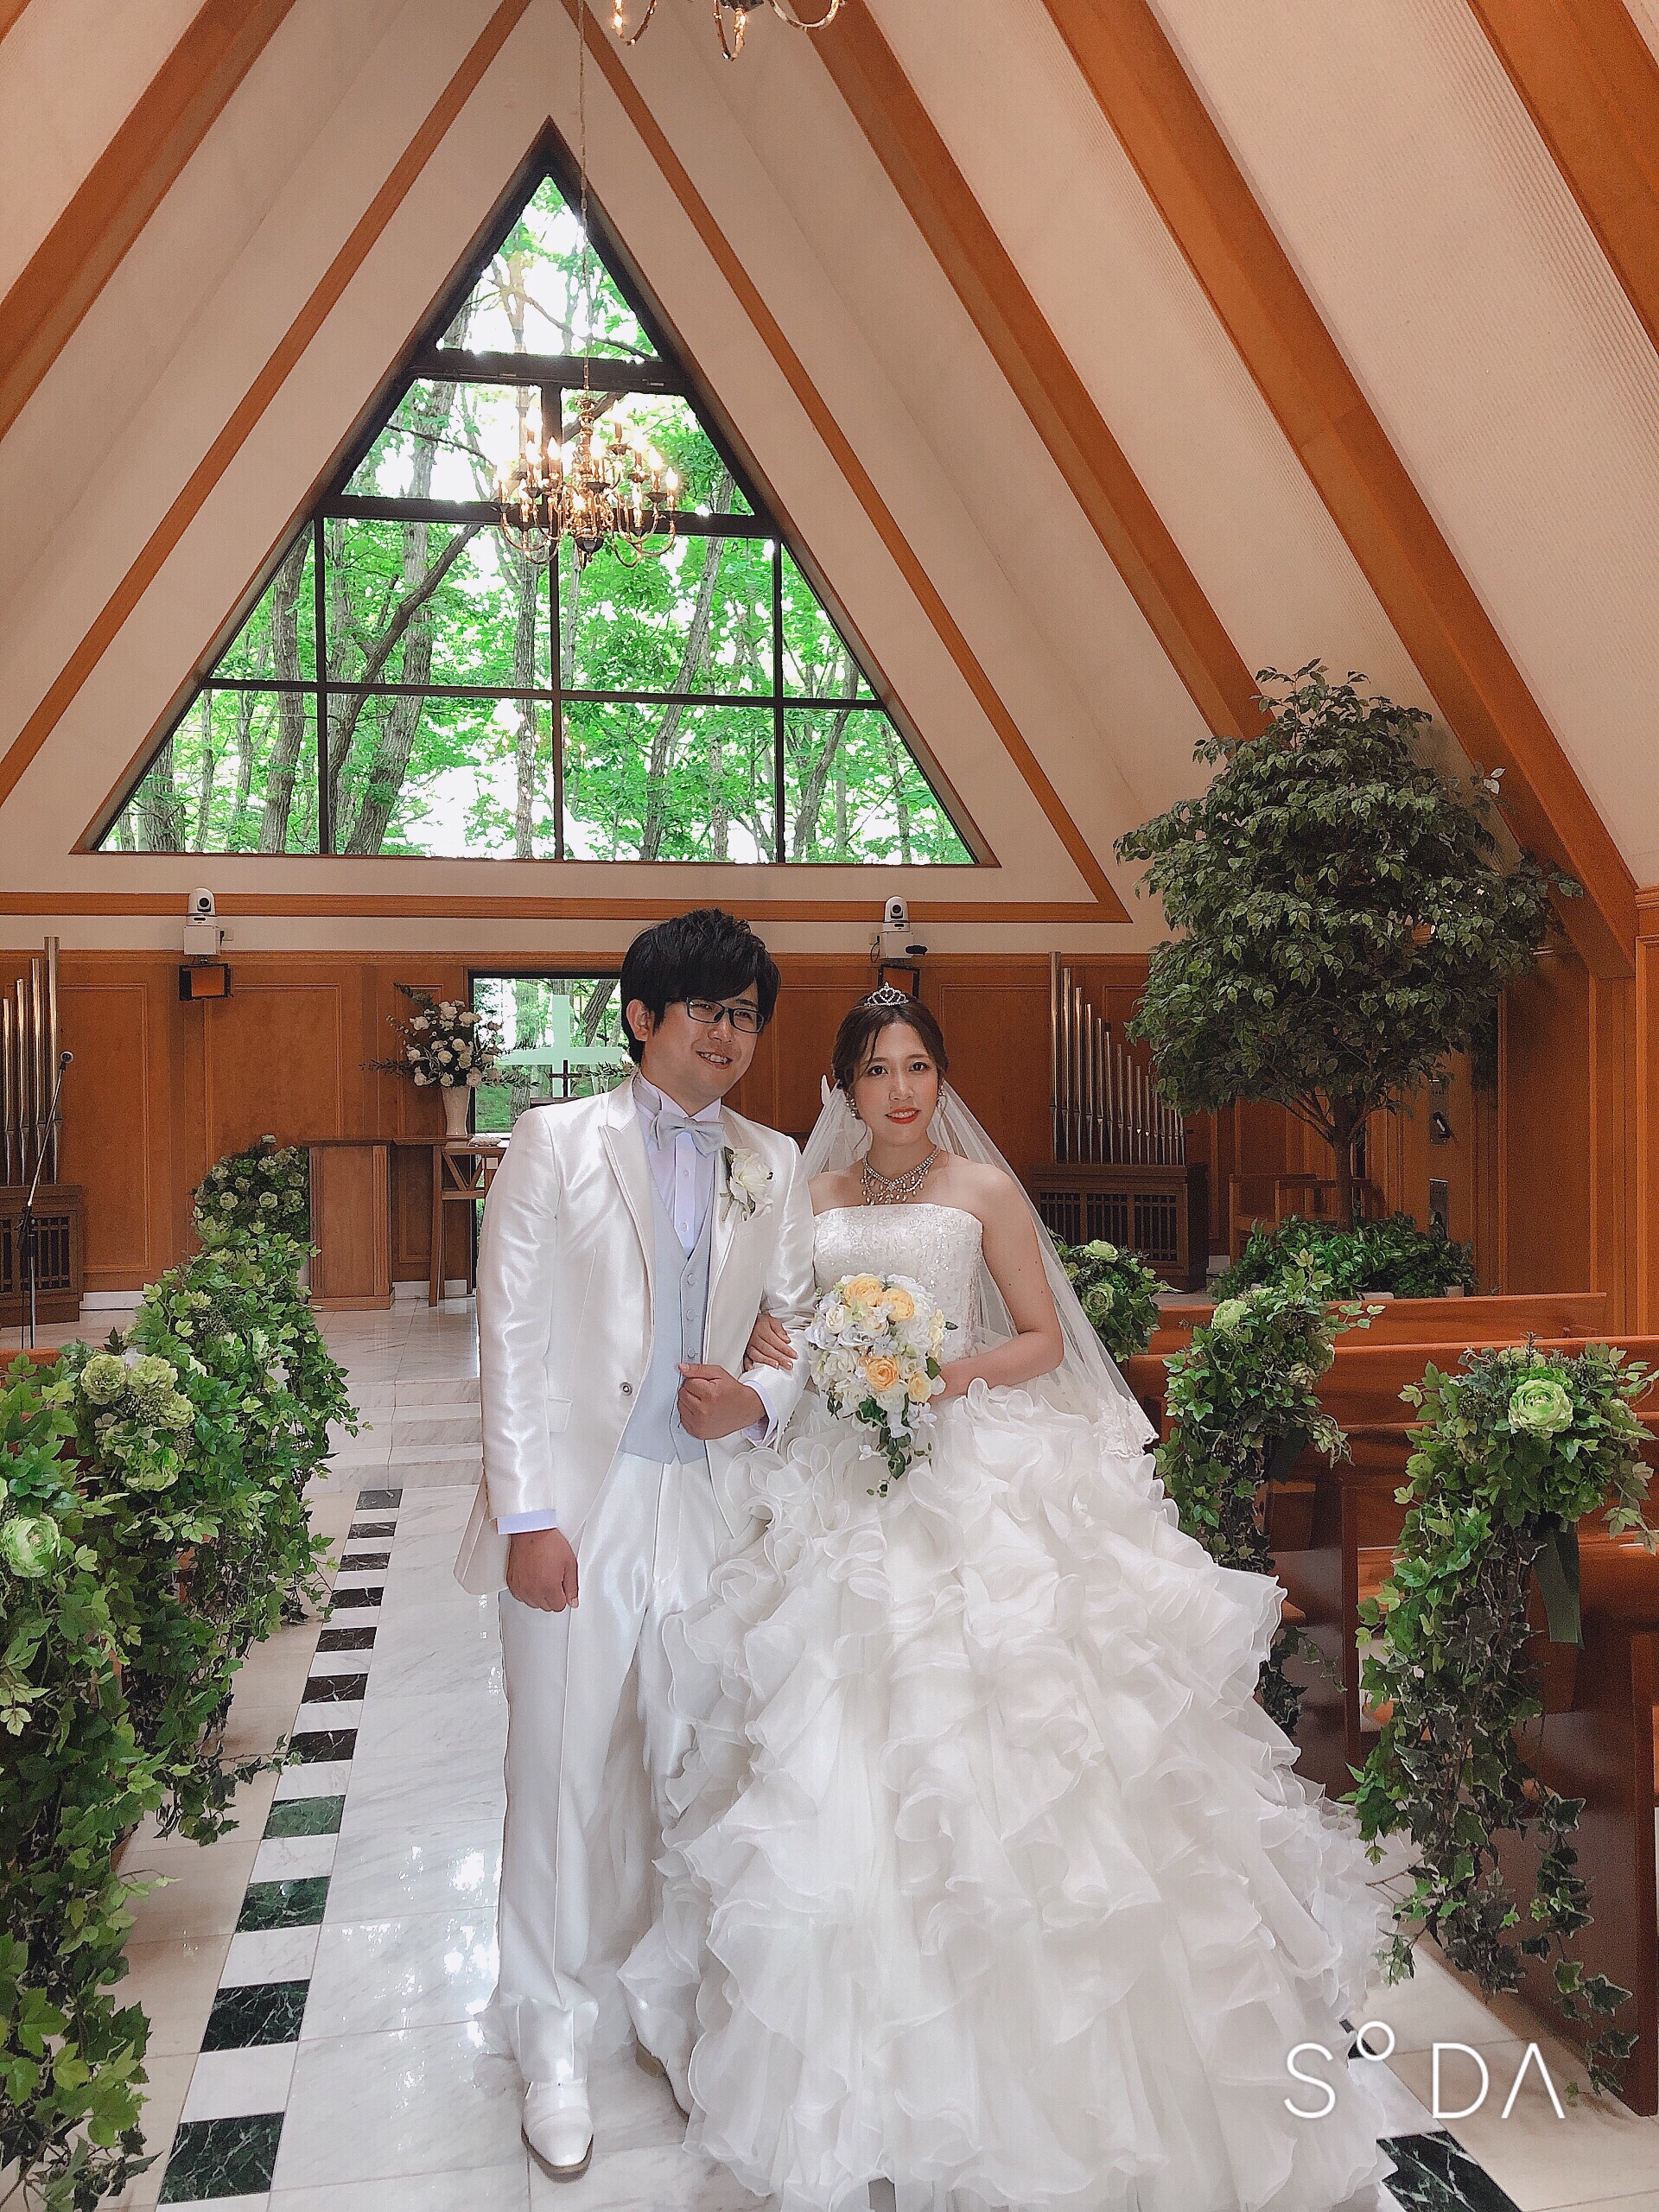 ウェディングドレスショップアトリエアンのブログ 幸せレポートアップ エピナール那須で結婚式でした